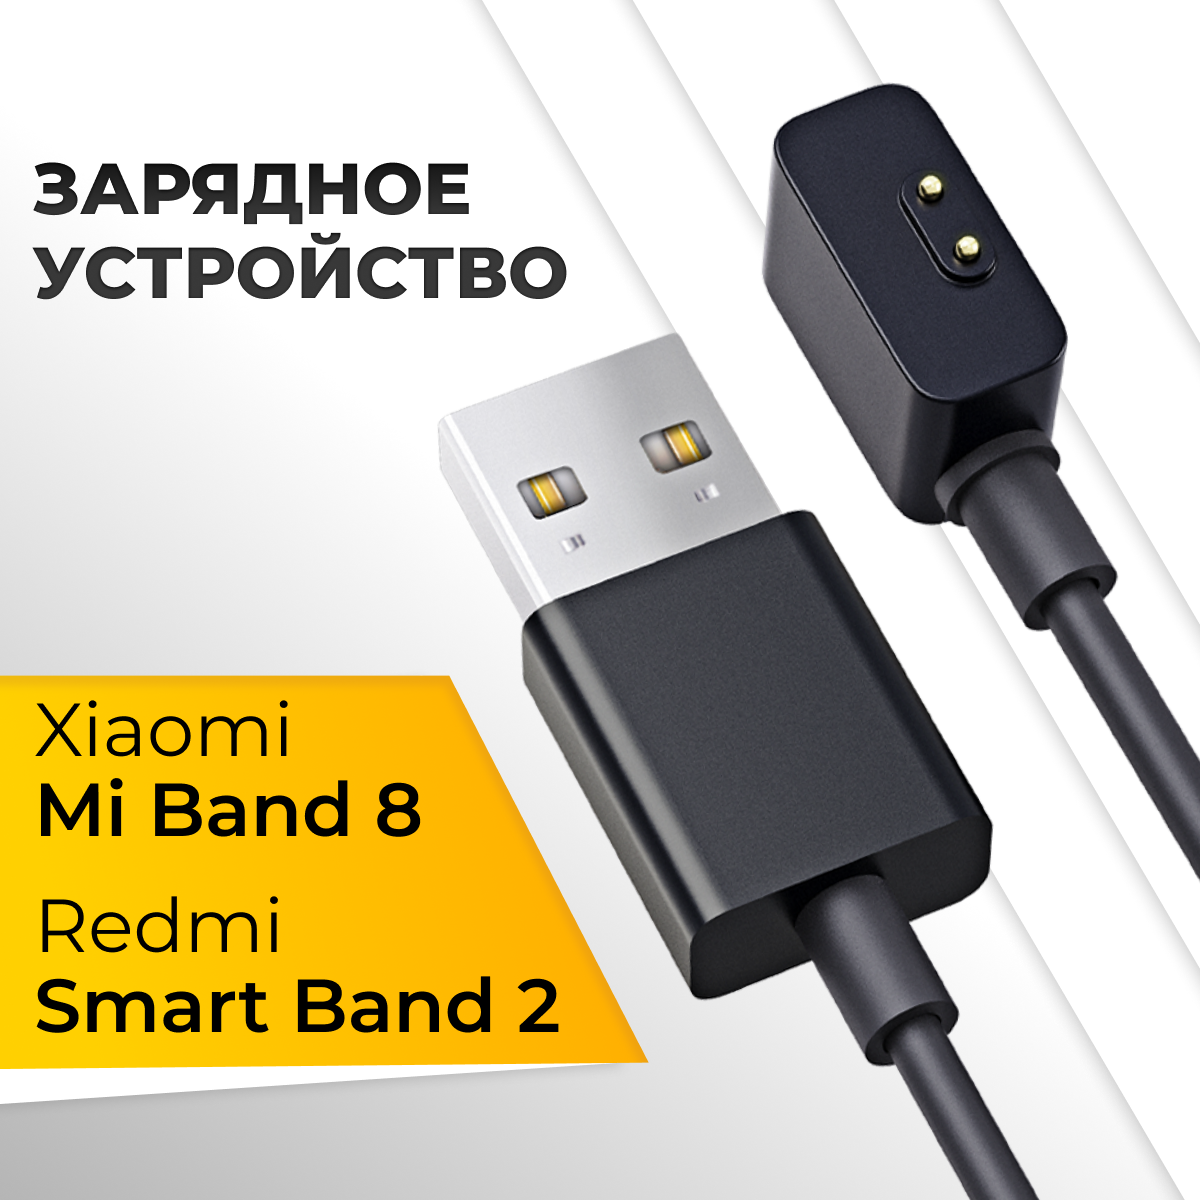 Зарядное устройство для фитнес браслета Xiaomi Mi Band 8, Redmi Smart Band 2 / Зарядка для смарт часов Сяоми Ми банд 8, Редми Смарт банд 2 / Черный